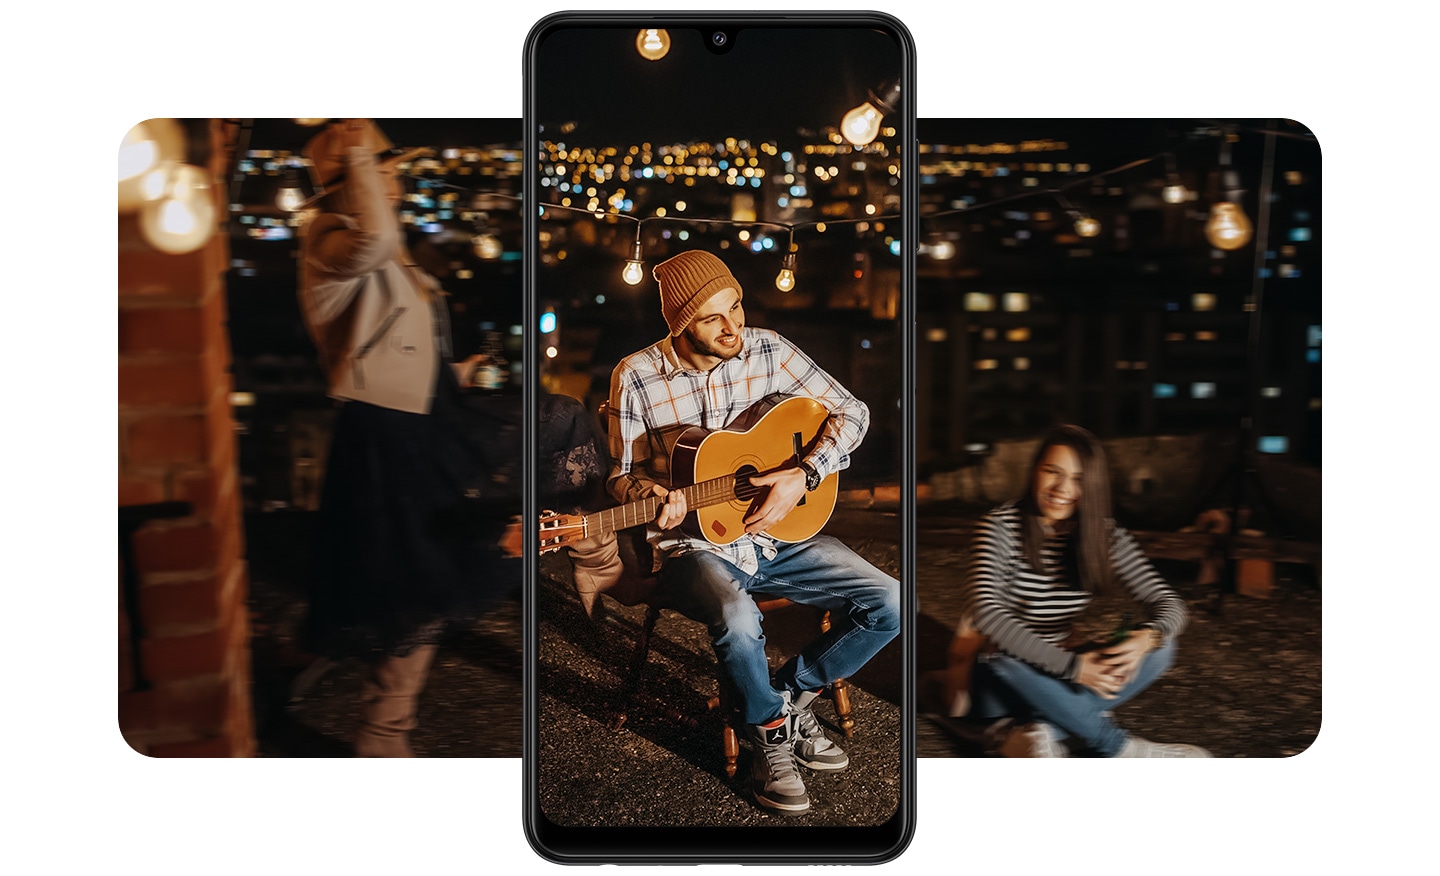 Lidé si užívají noční party na střeše se zářivým panoramatem města v pozadí. Uprostřed je vertikálně umístěný A22 s mužem hrajícím na kytaru. Obraz je jasnější a podrobnější než okolní scéna, což demonstruje OIS.